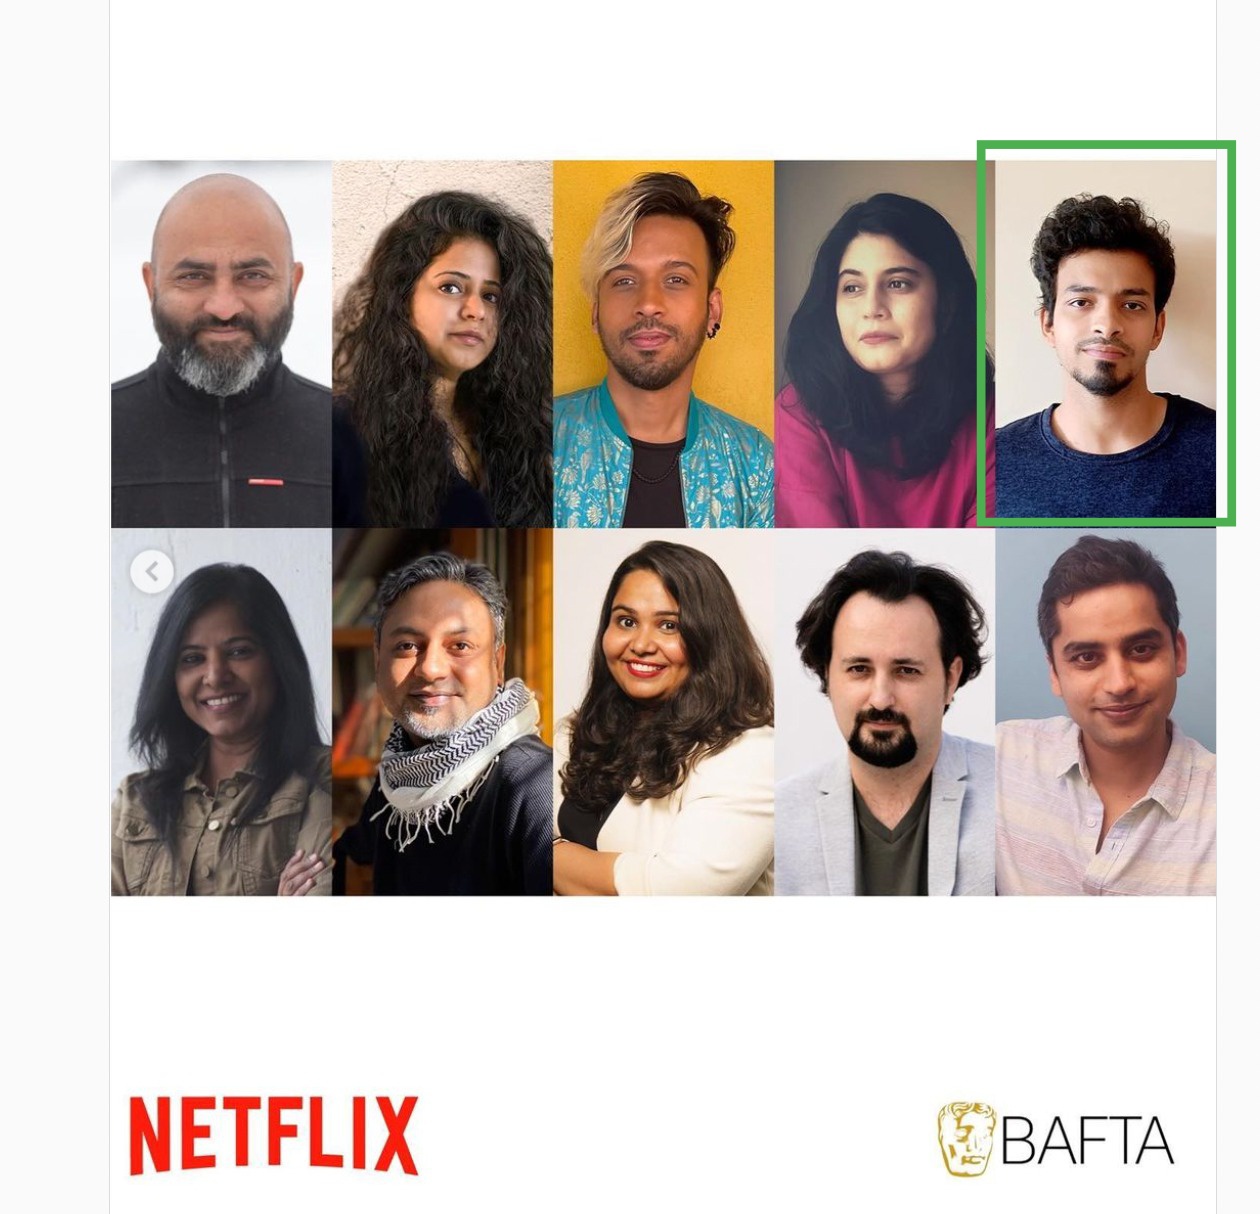 Nakul Verma selected as one of the top 10 BAFTA Breakthroughs of 2022